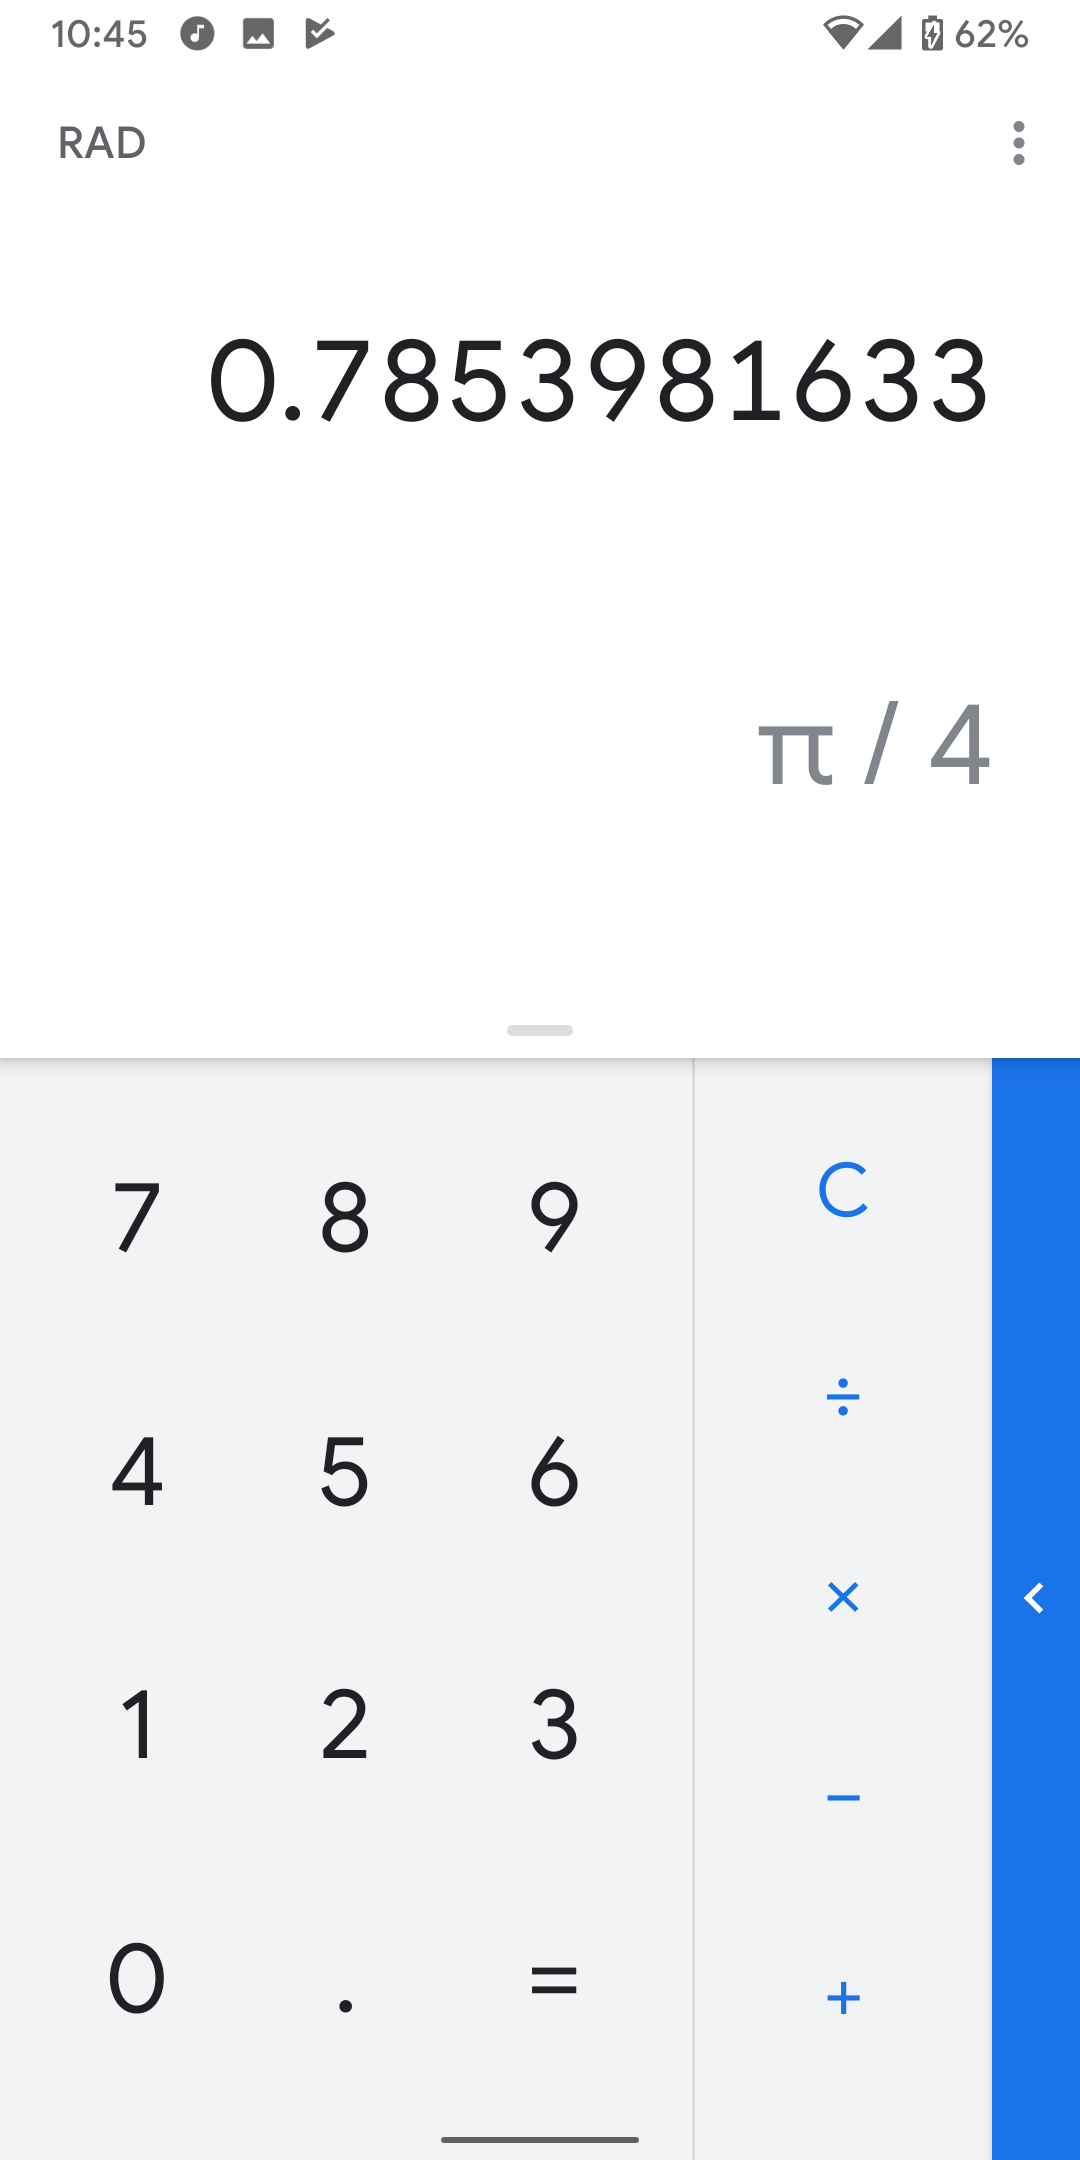 Google Calculator v22.22 displays fractions alongside decimal